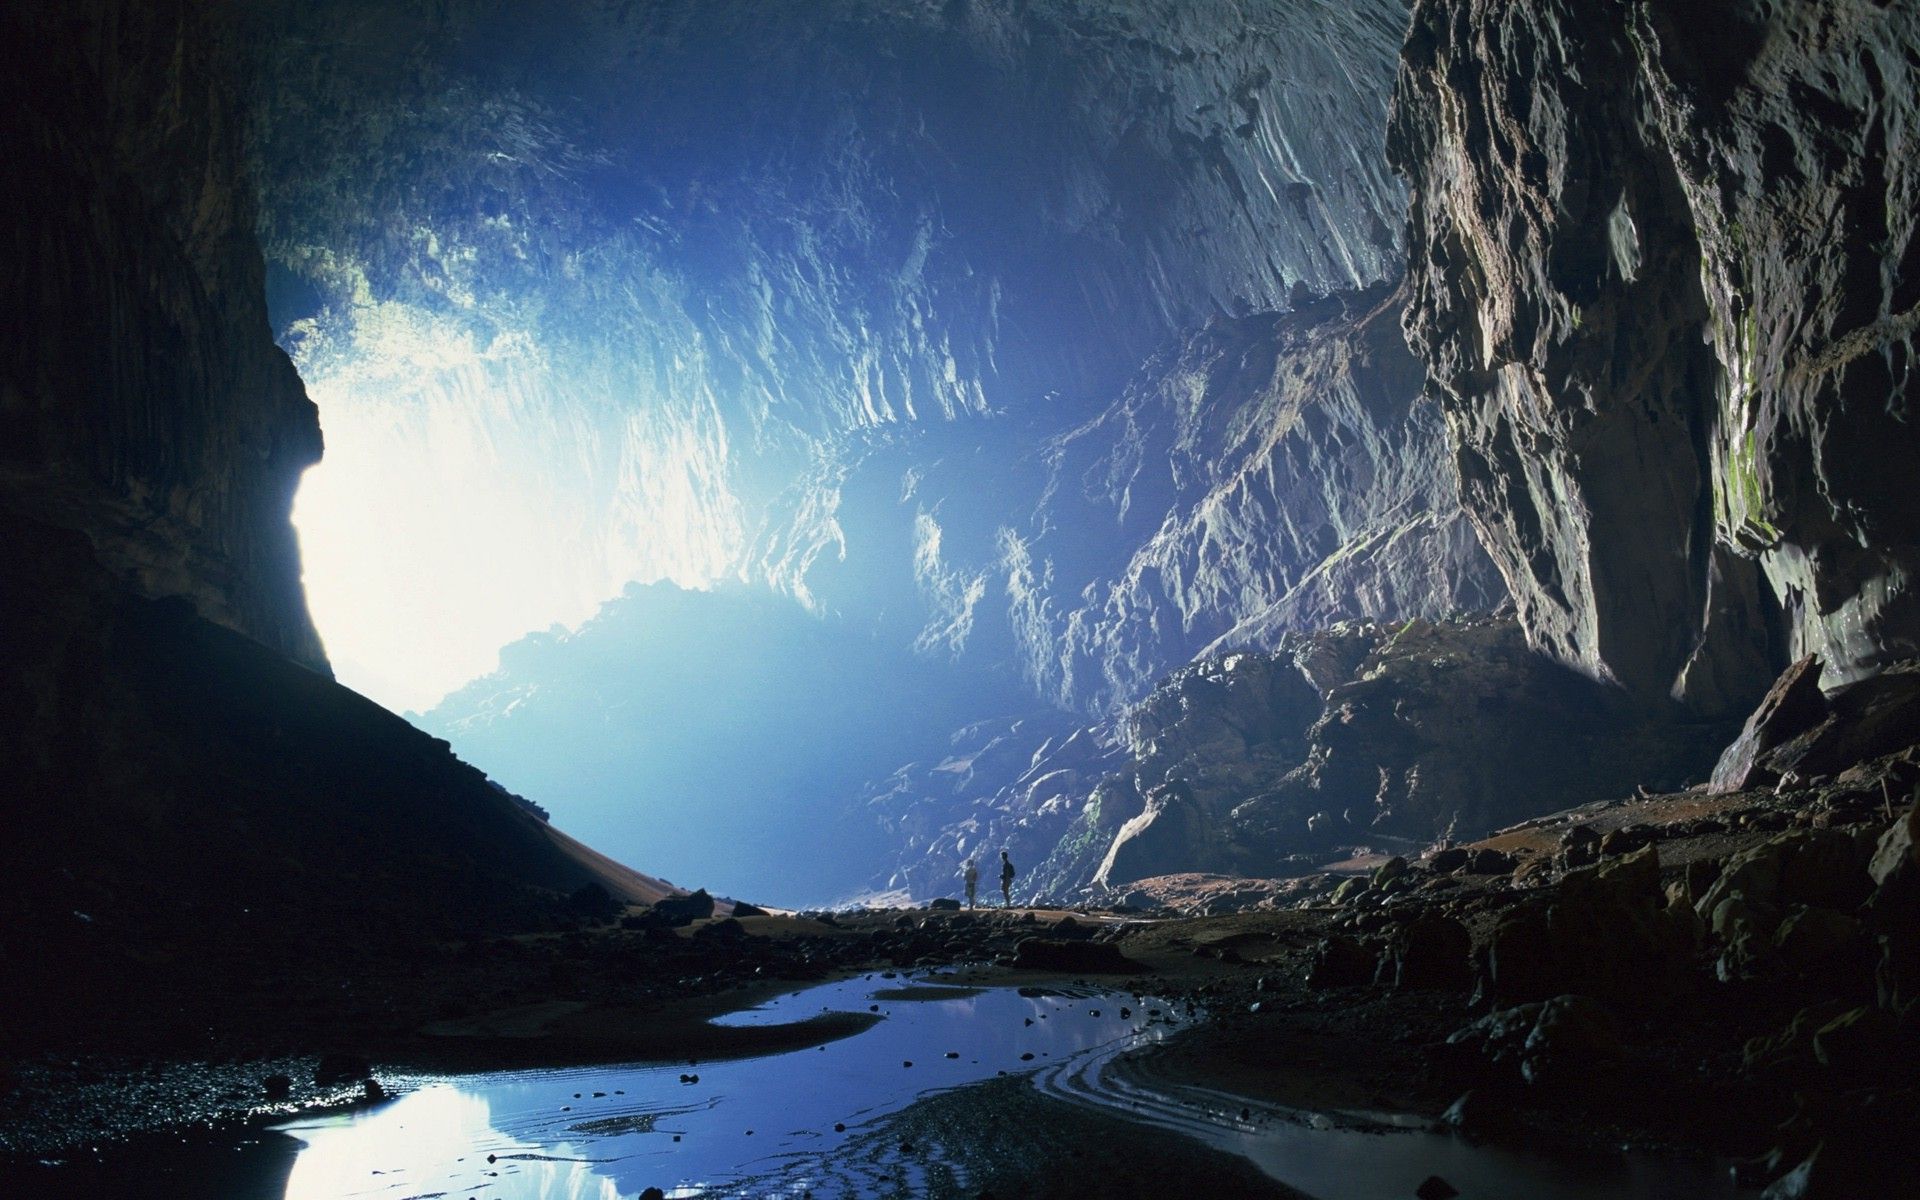 Fondos de pantalla: 1920x1200 px, cueva, acantilado, oscuro, enorme, paisaje